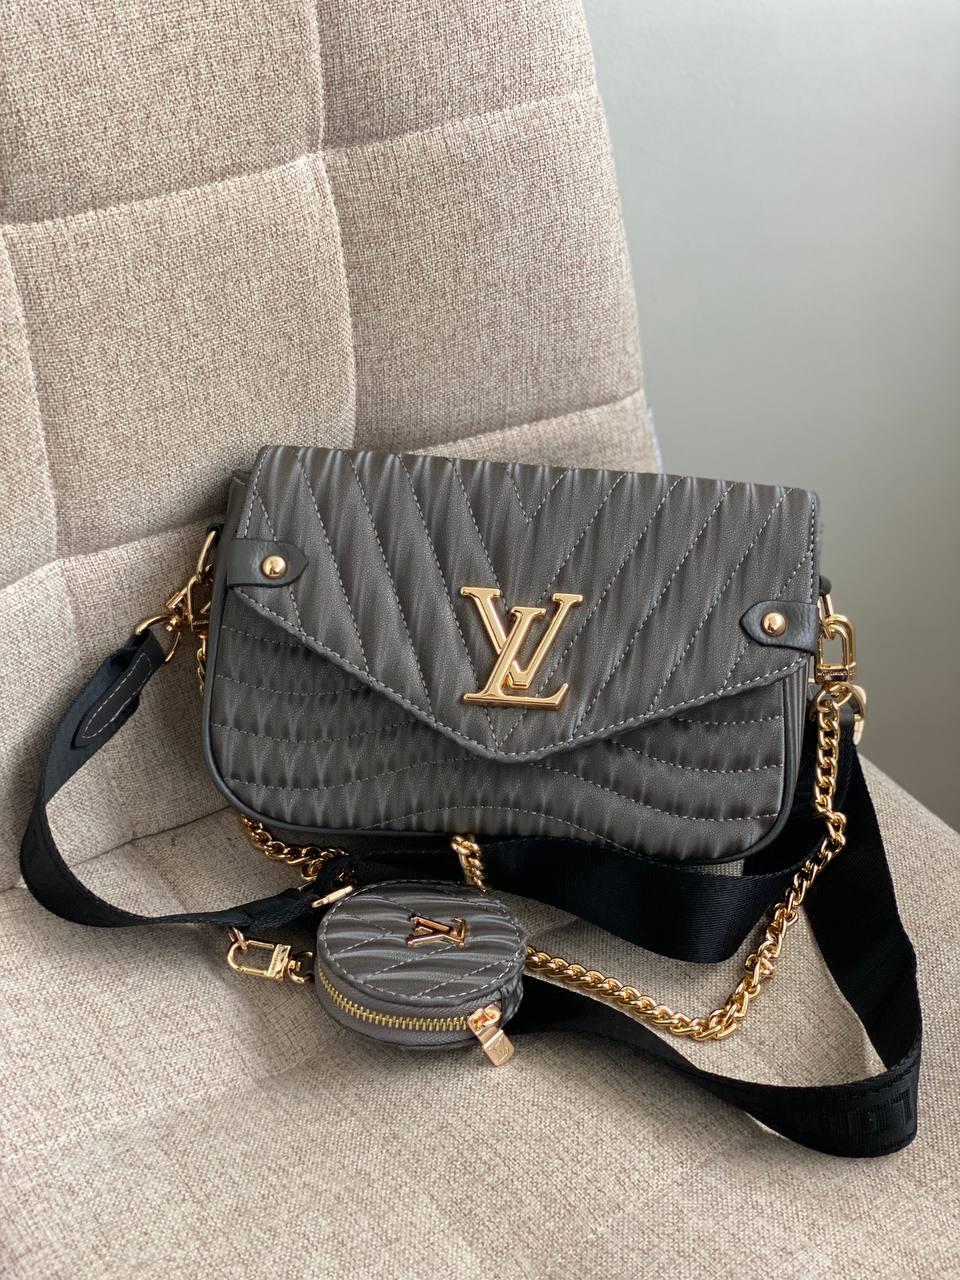 Стильна жіноча сумка LV wave grey жіноча сумка Луї Віттон сірого кольору